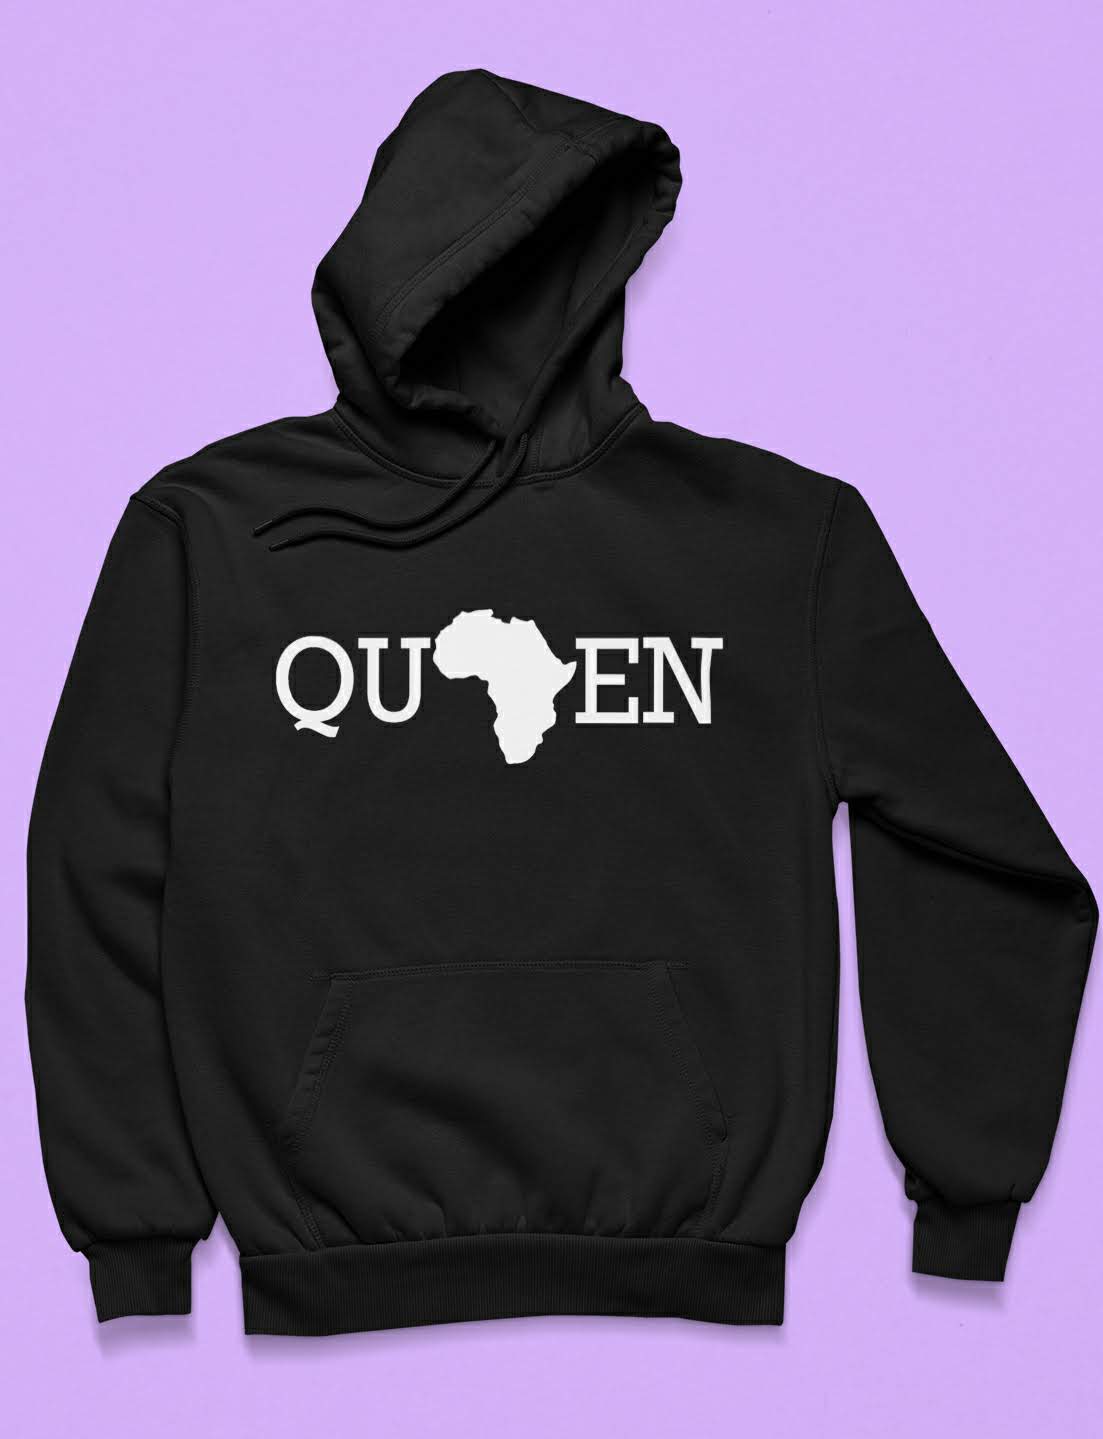 Queen "Africa" Hoodie